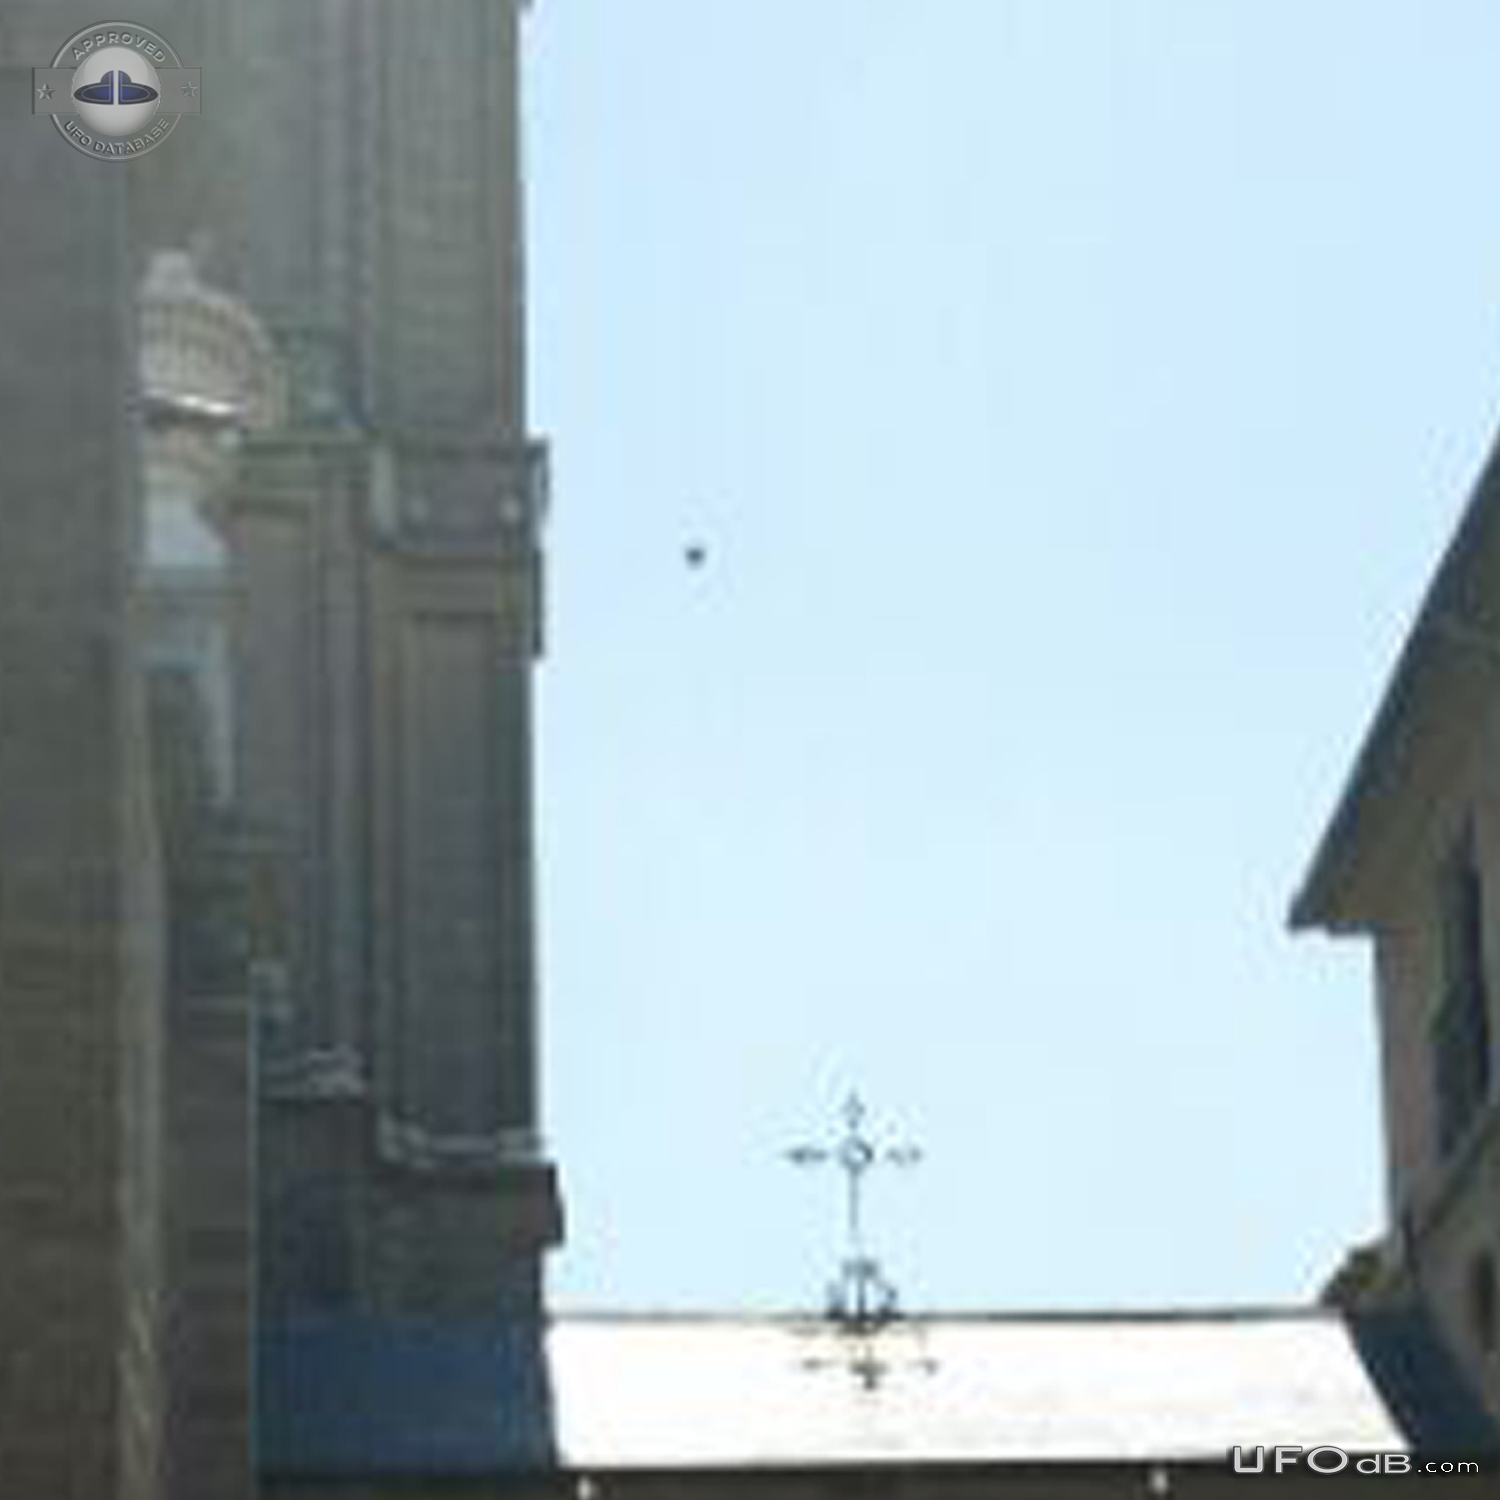 UFO caught on picture in Calle Arco de Palacio Toledo Spain 2015 UFO Picture #739-4